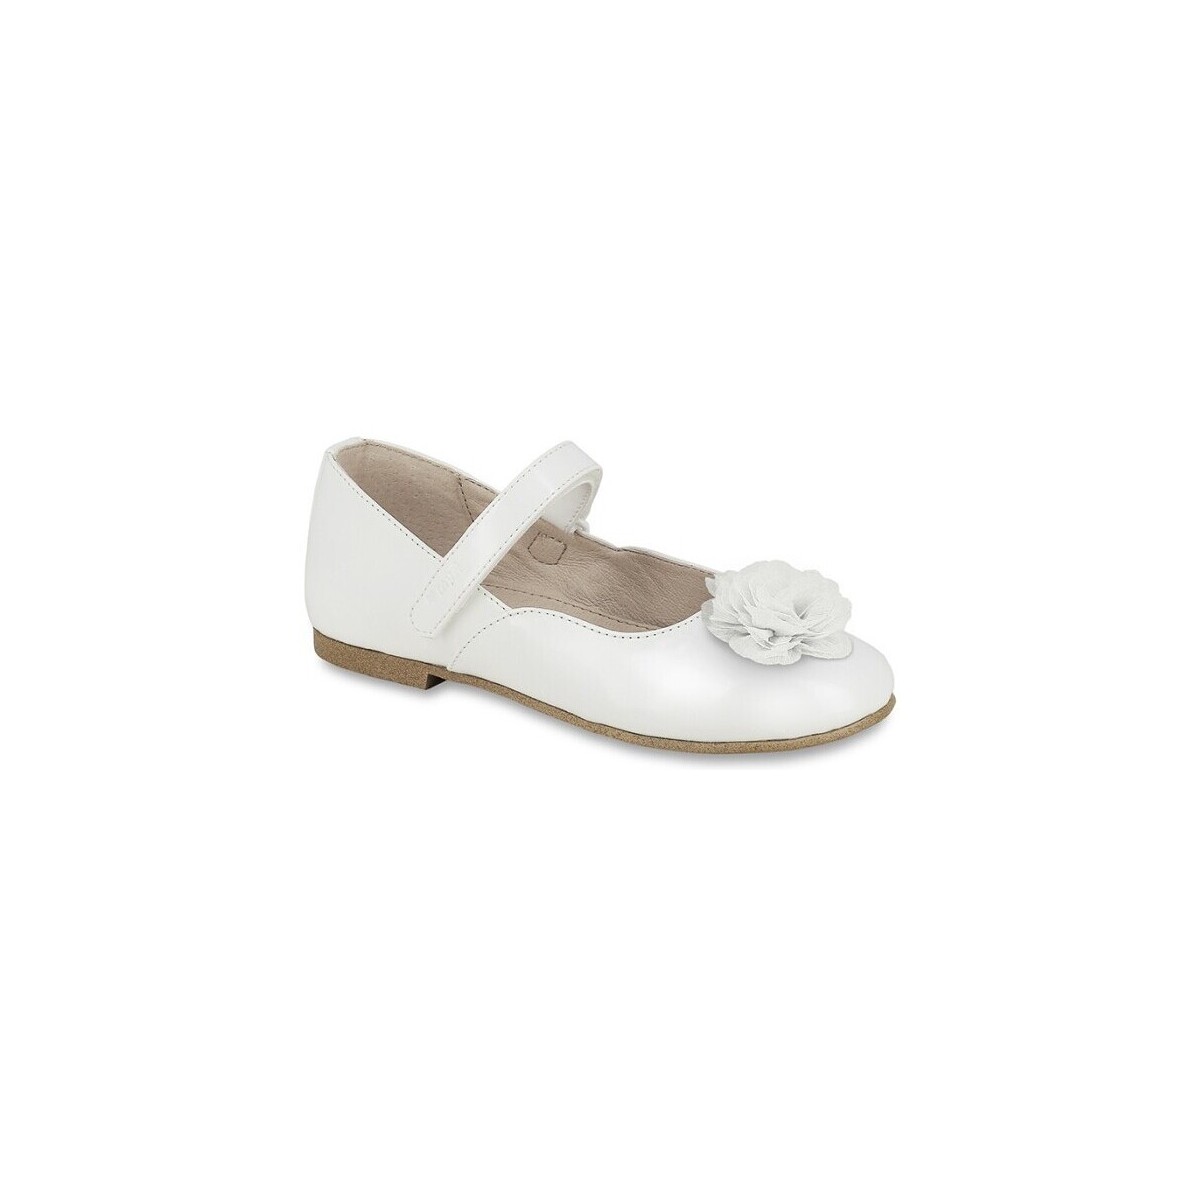 Παπούτσια Κορίτσι Μπαλαρίνες Mayoral 28170-18 Άσπρο